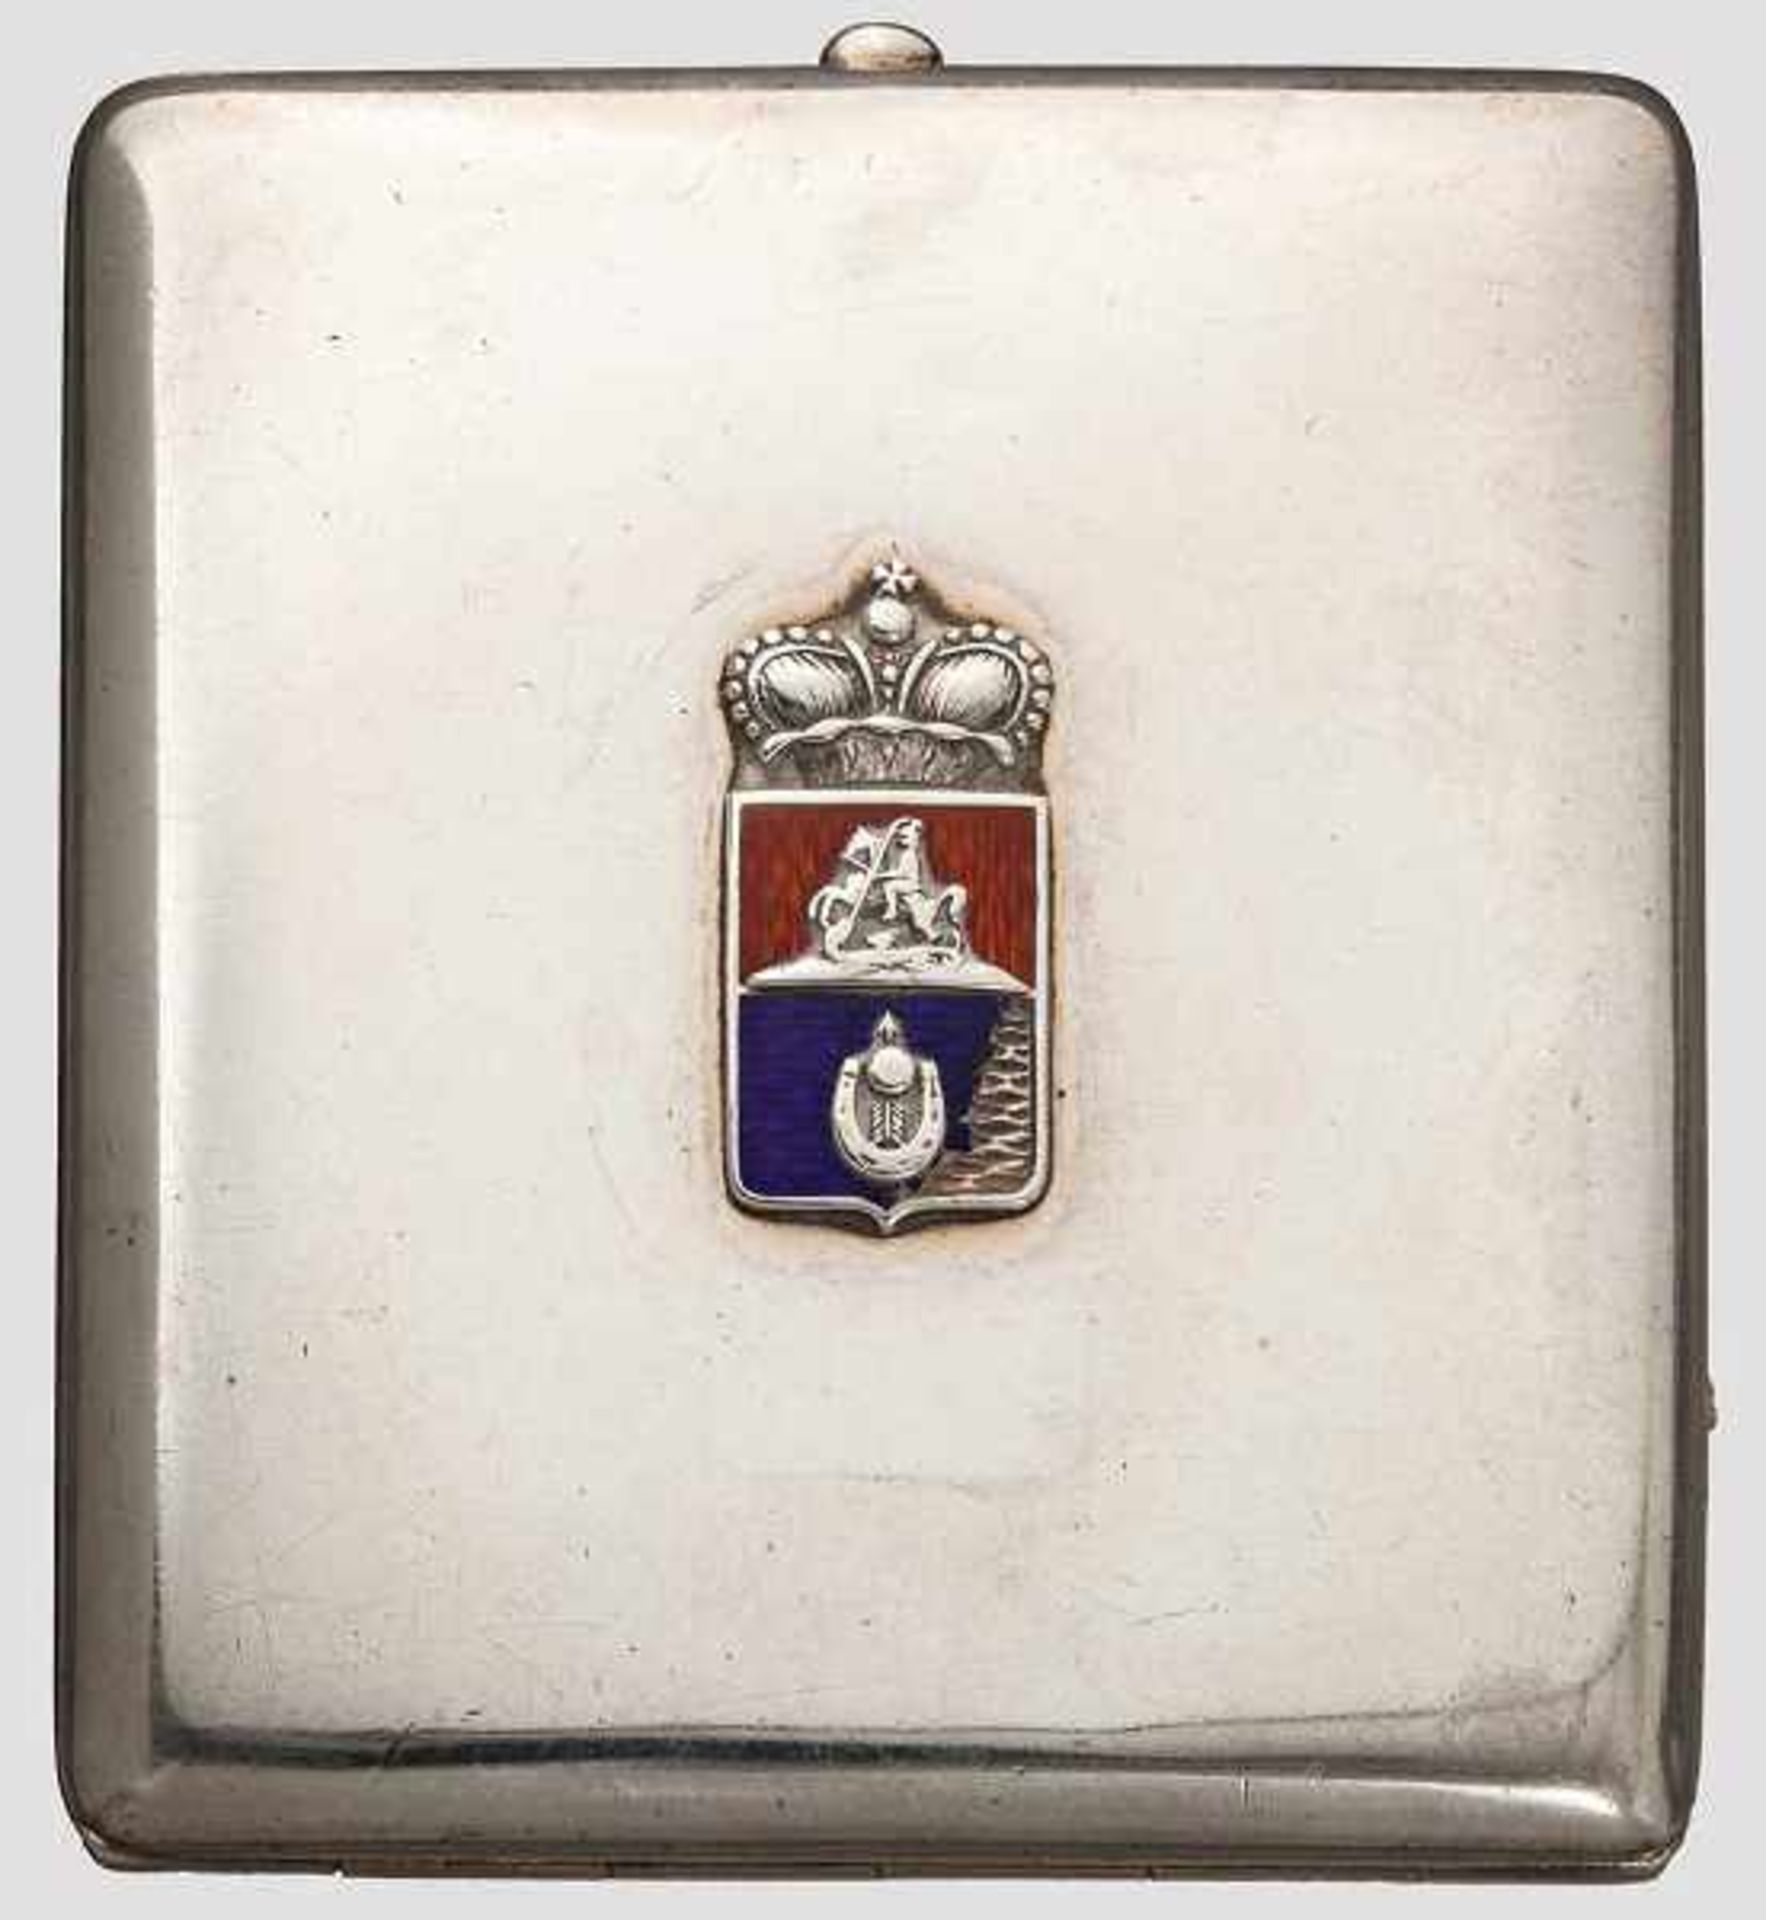 Silbernes Zigarettenetui mit Wappen von Fürst Sviatopolk-Mirsky, Russland/Polen, zwischen 1893 und